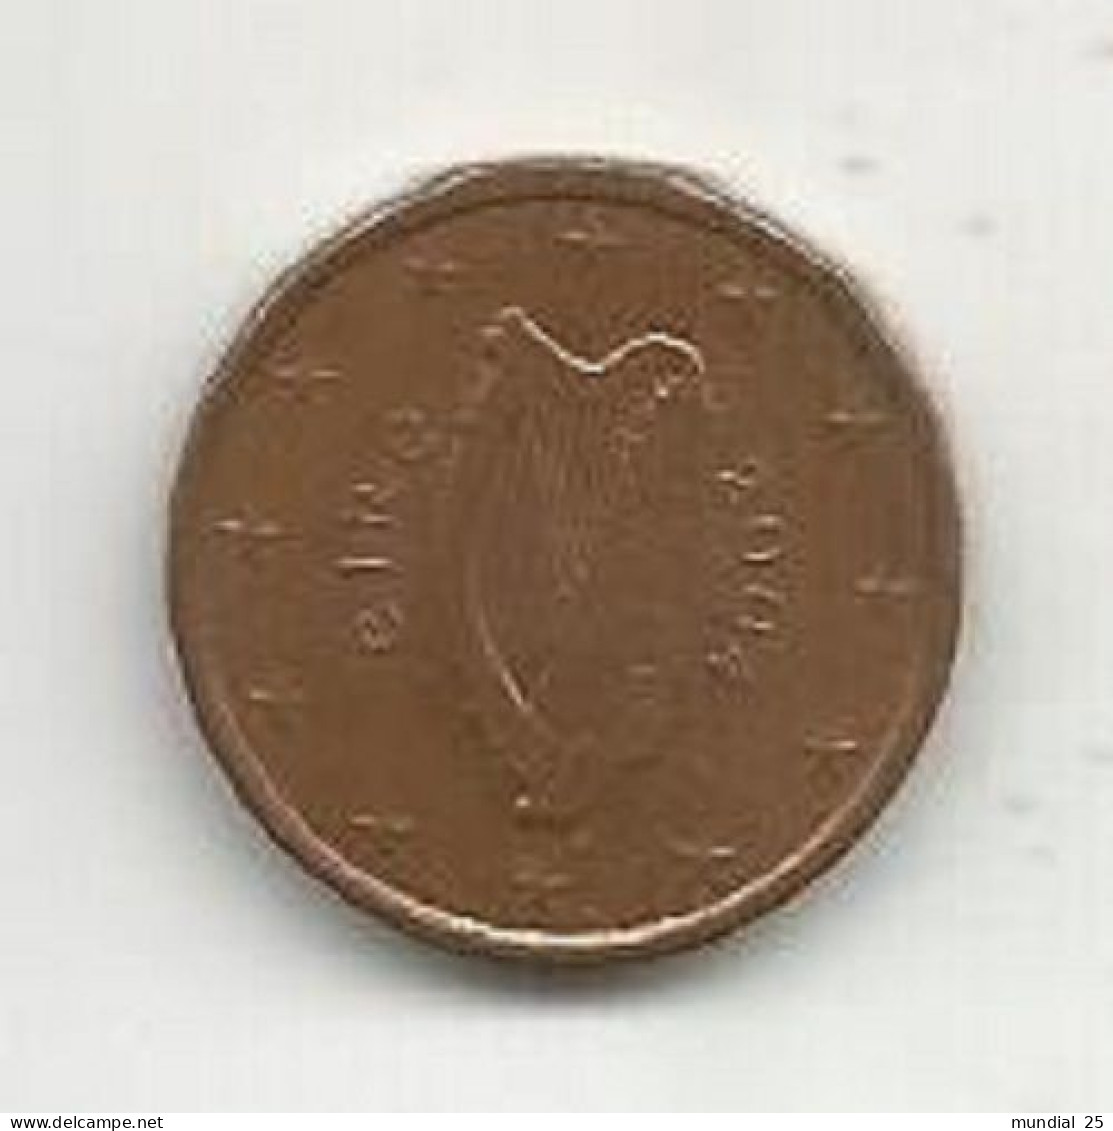 IRELAND 1 EURO CENT 2004 - Irlanda